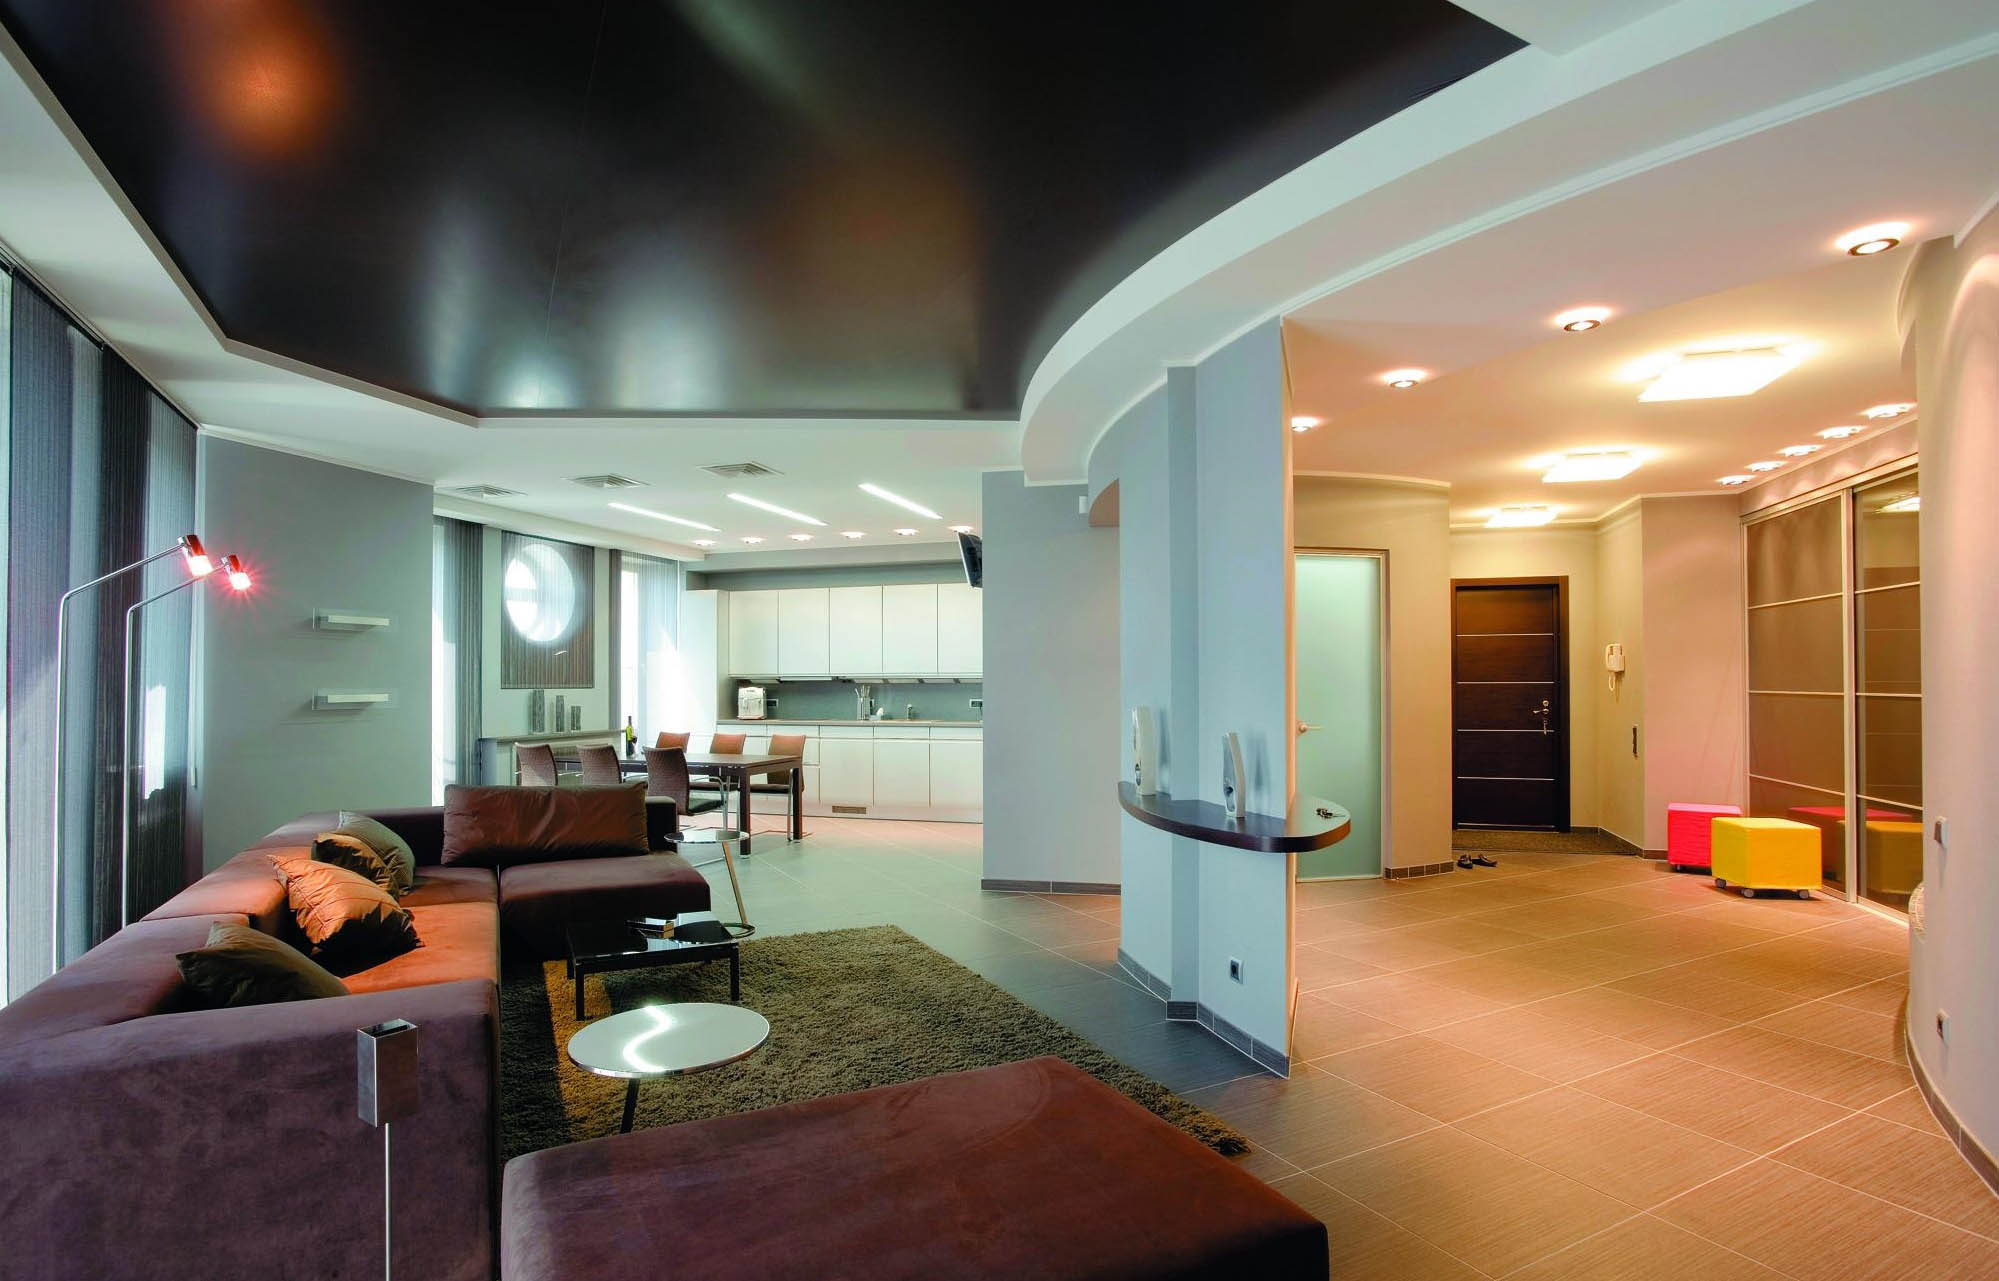 Отделка гостиной гипсокартоном — актуальные дизайнерские решения в отделке стен и потолка